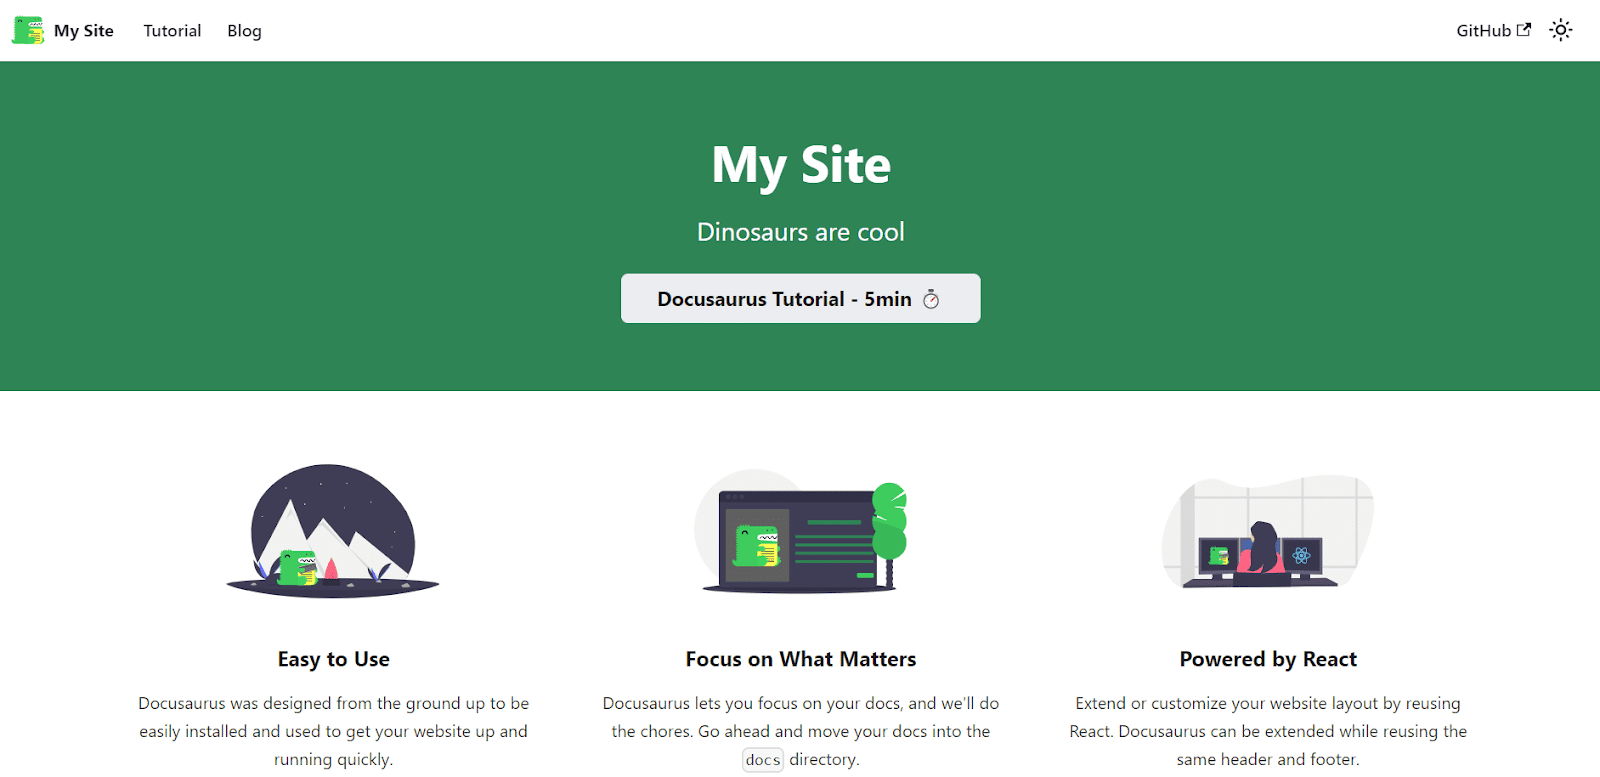 Docusaurusのトップページ（緑色のバナーに白い文字「My Site」と「Dinosaurs are cool」という見出しが表示される）